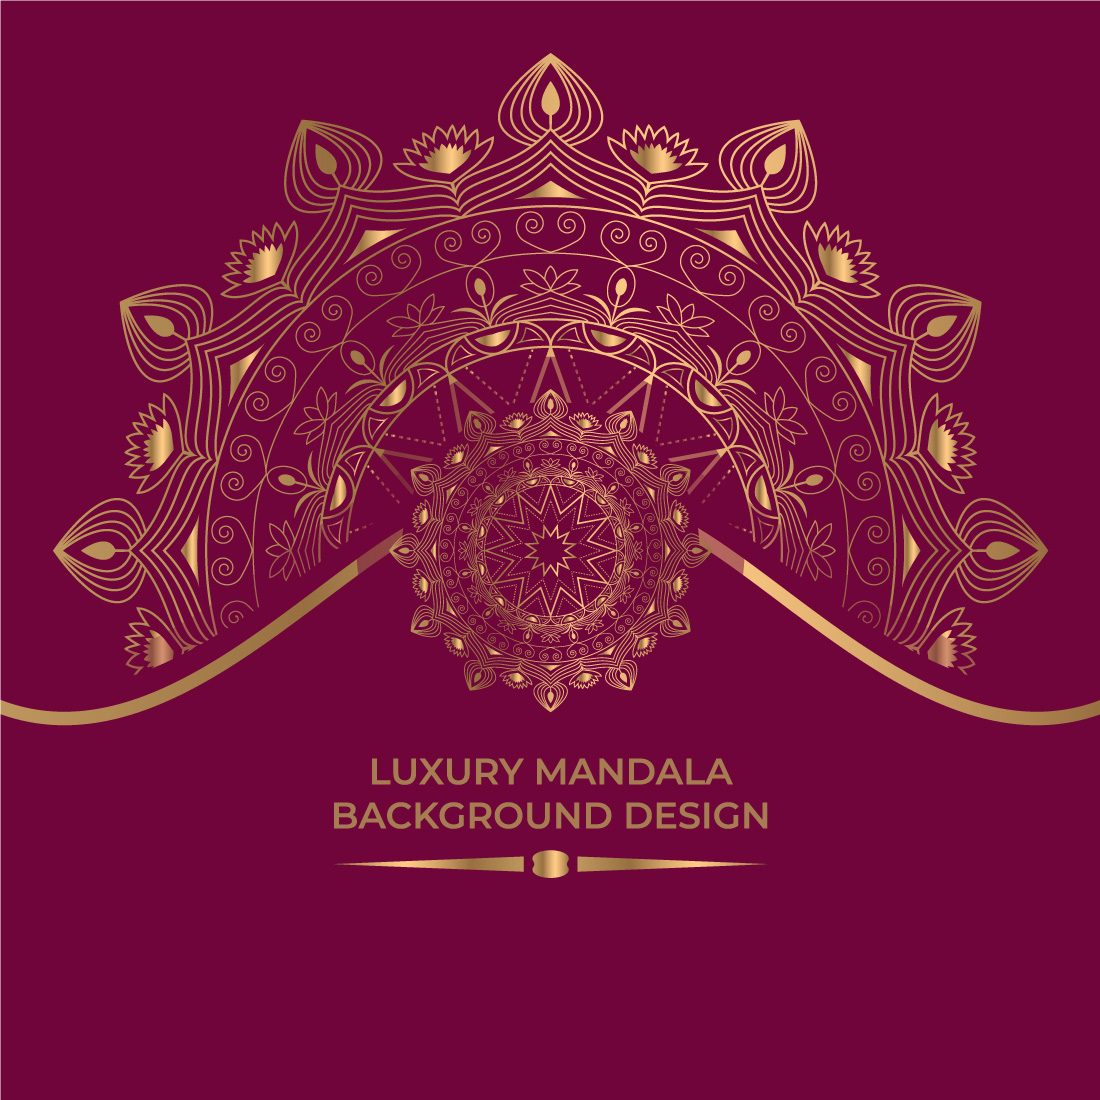 02 Luxury Mandala Background Design cover image.